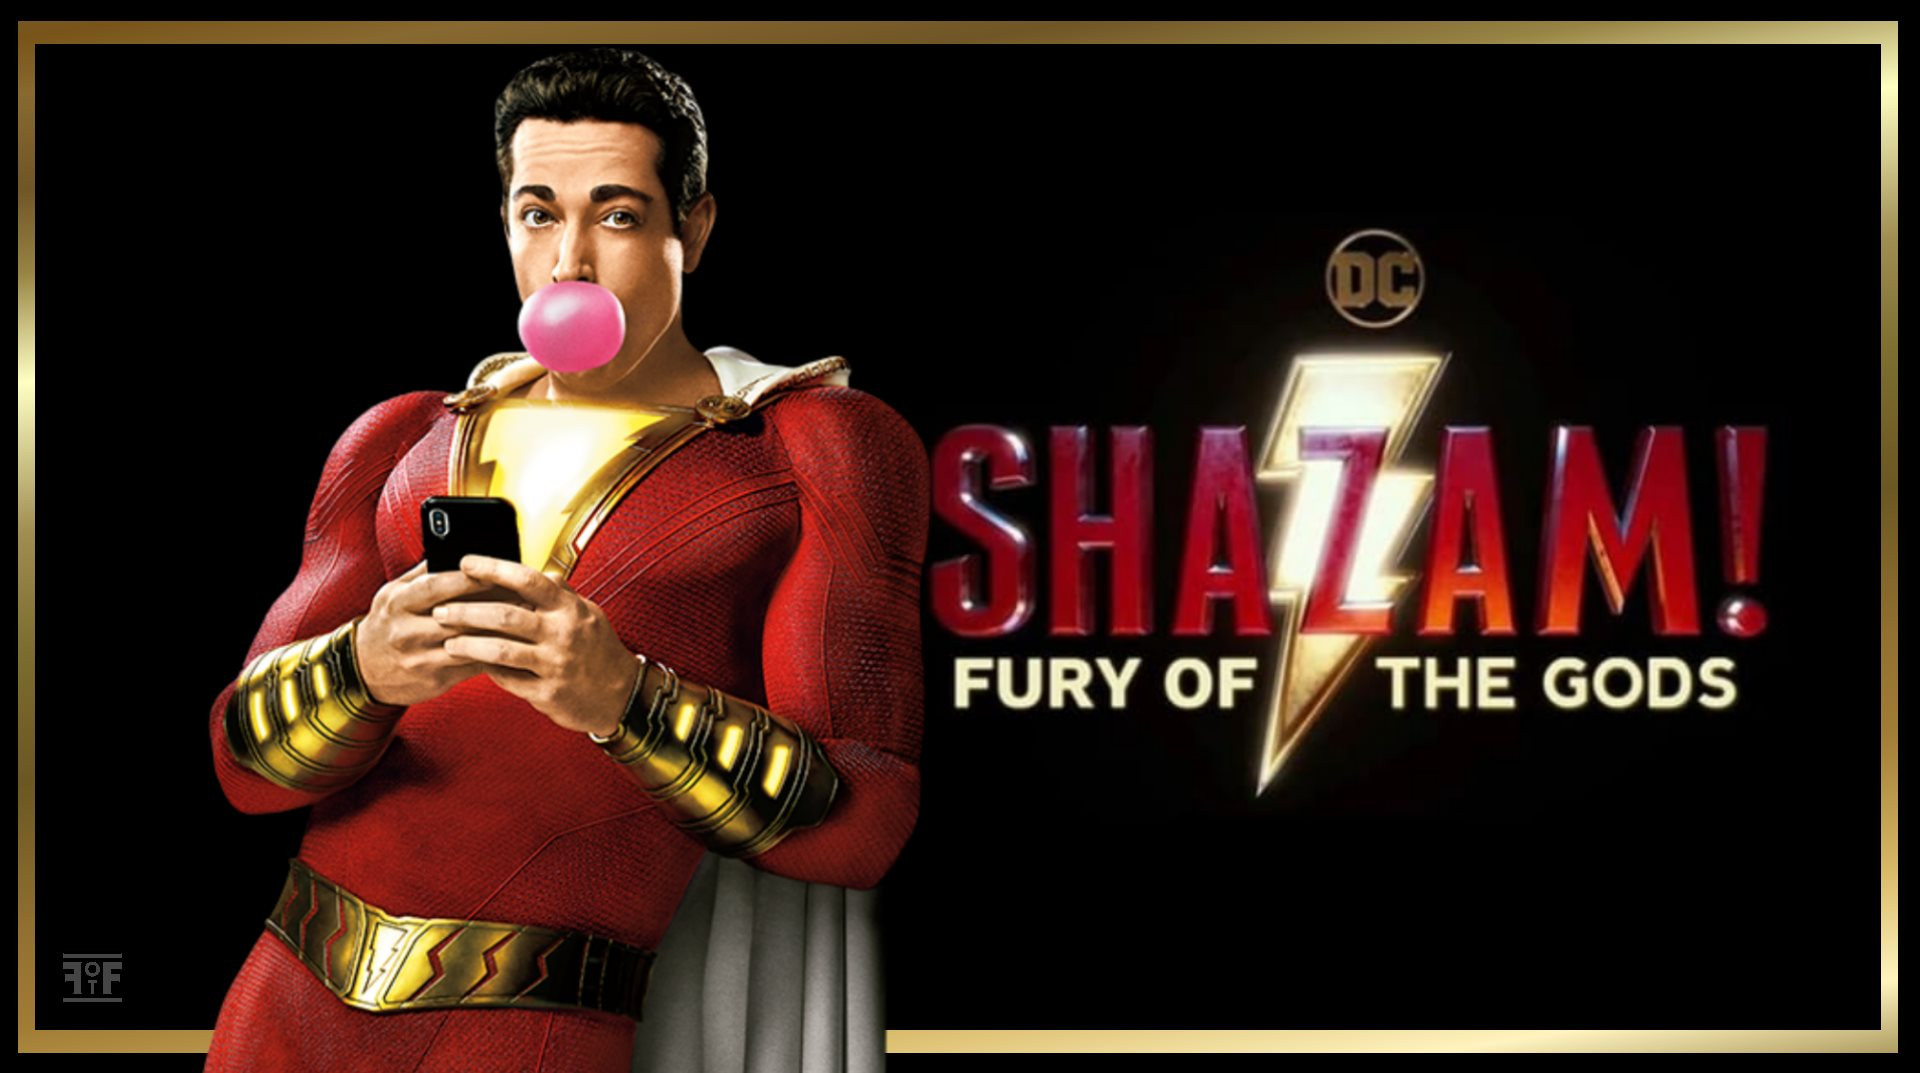 shazam-fury-of-the-gods-featured.jpg